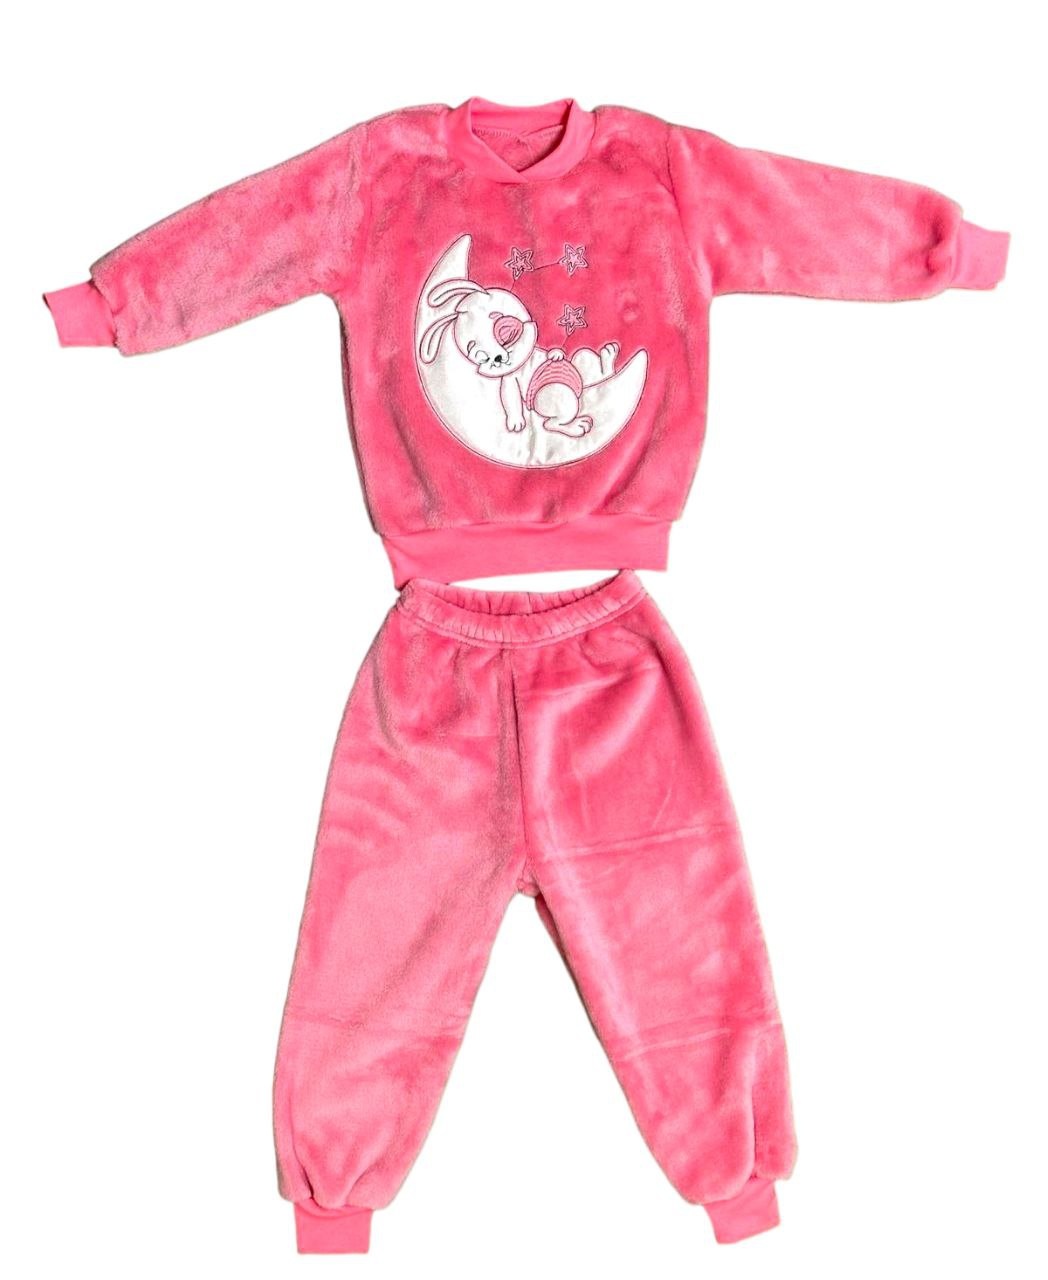 Піжама однотонна рвана махра з вишивкою рожевого кольору, Рожевий, 2-3 роки, 98см